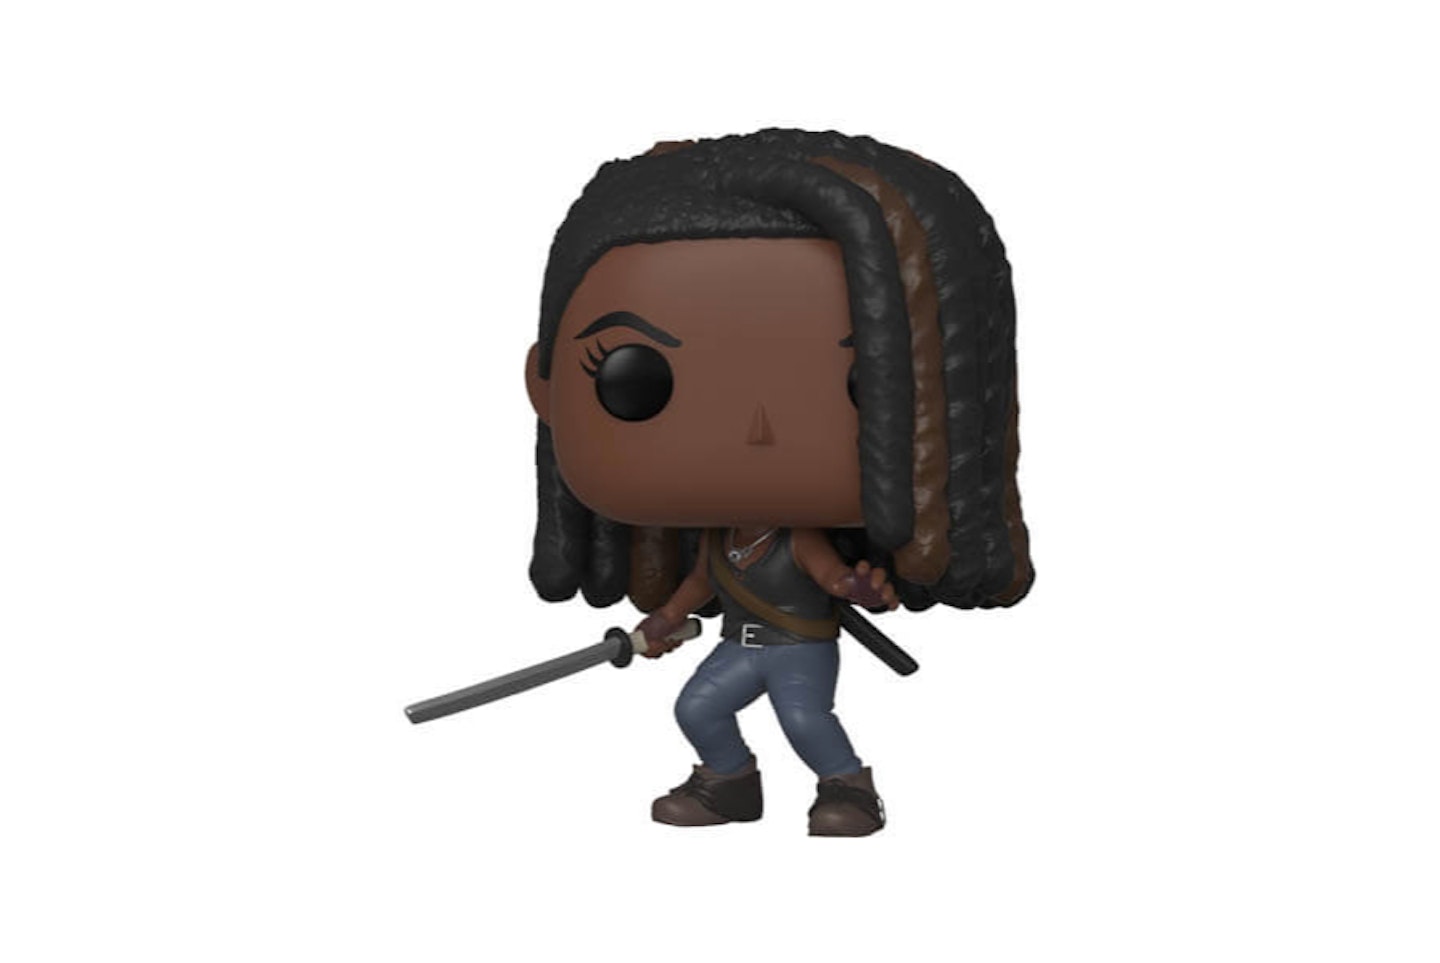 Michonne Is Ready for Battle as New Walking Dead Deluxe Figure